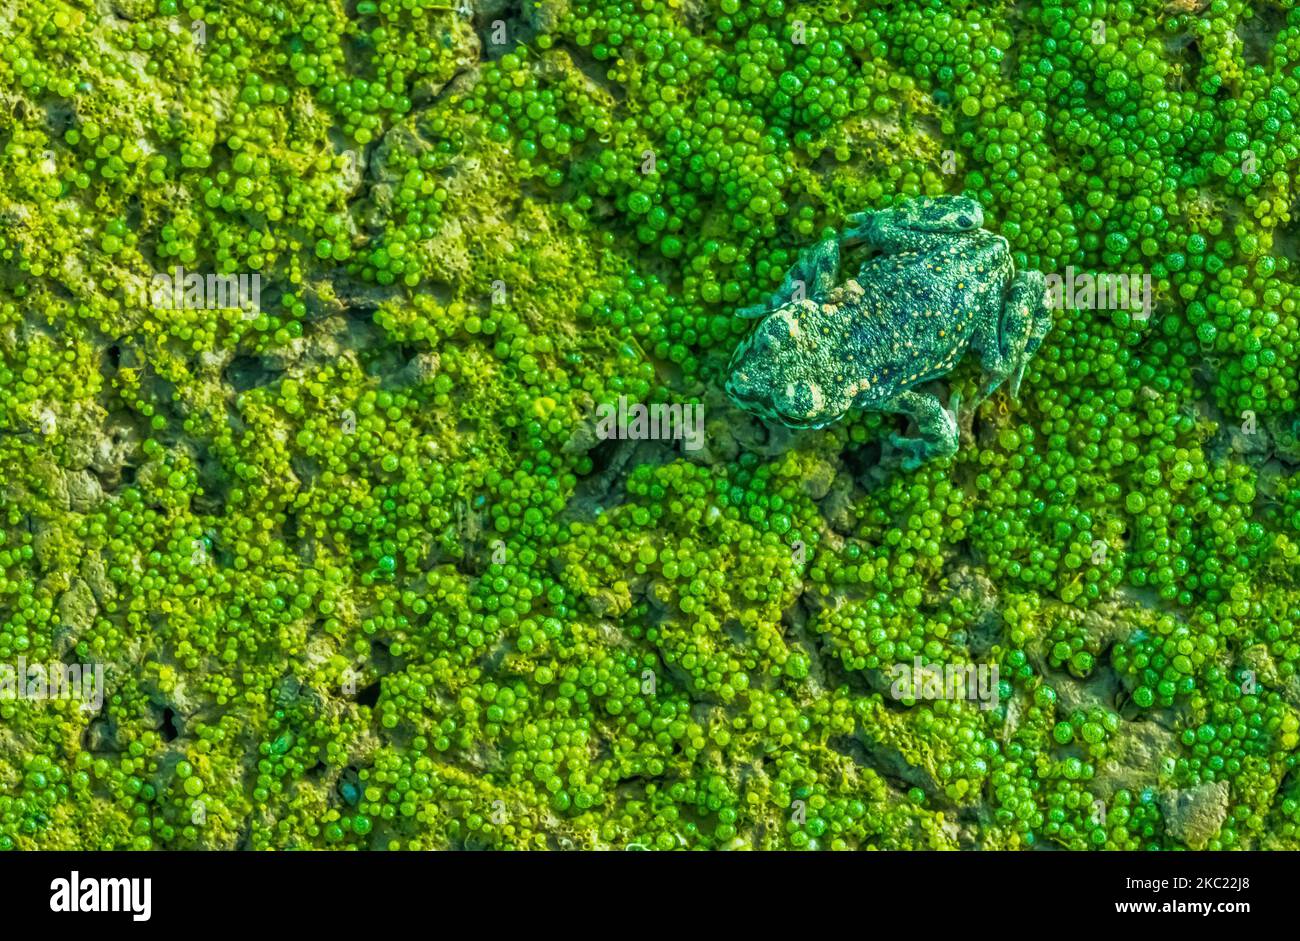 Europäische grüne Kröte - Bufotes viridis versteckt sich auf einer Volvox-Kolonie Stockfoto